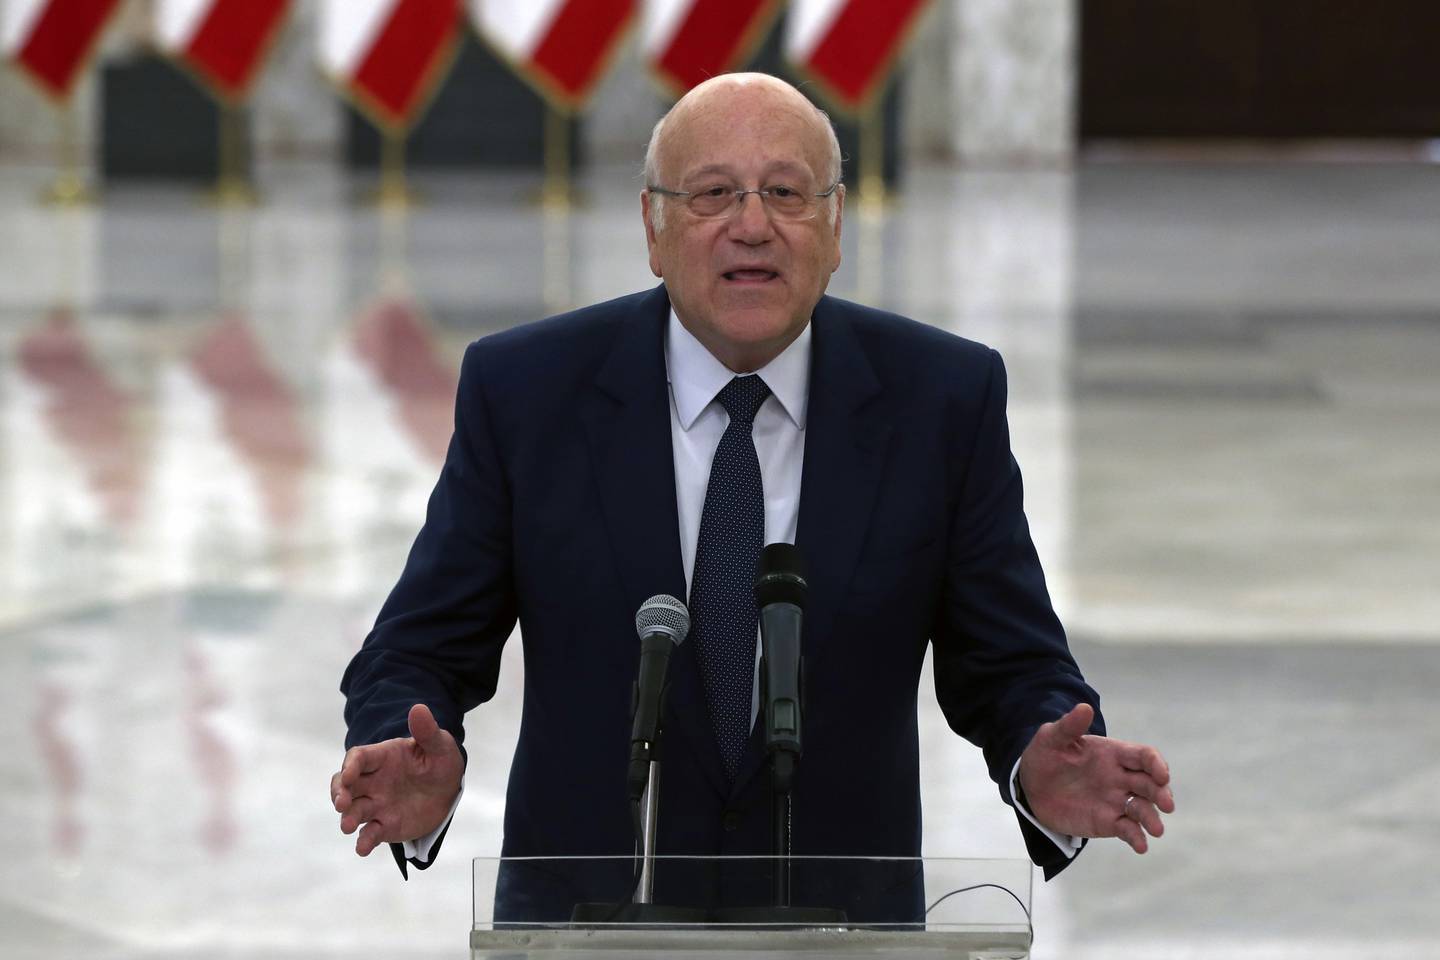 STATSMINISTER: Mangemilliardæren Najib Mikati fikk 26. juli i oppdrag å danne ny regjering i Libanon. For å få utløst nye lån som kan redde den libanesiske økonomien, må han trolig gå med på reformer